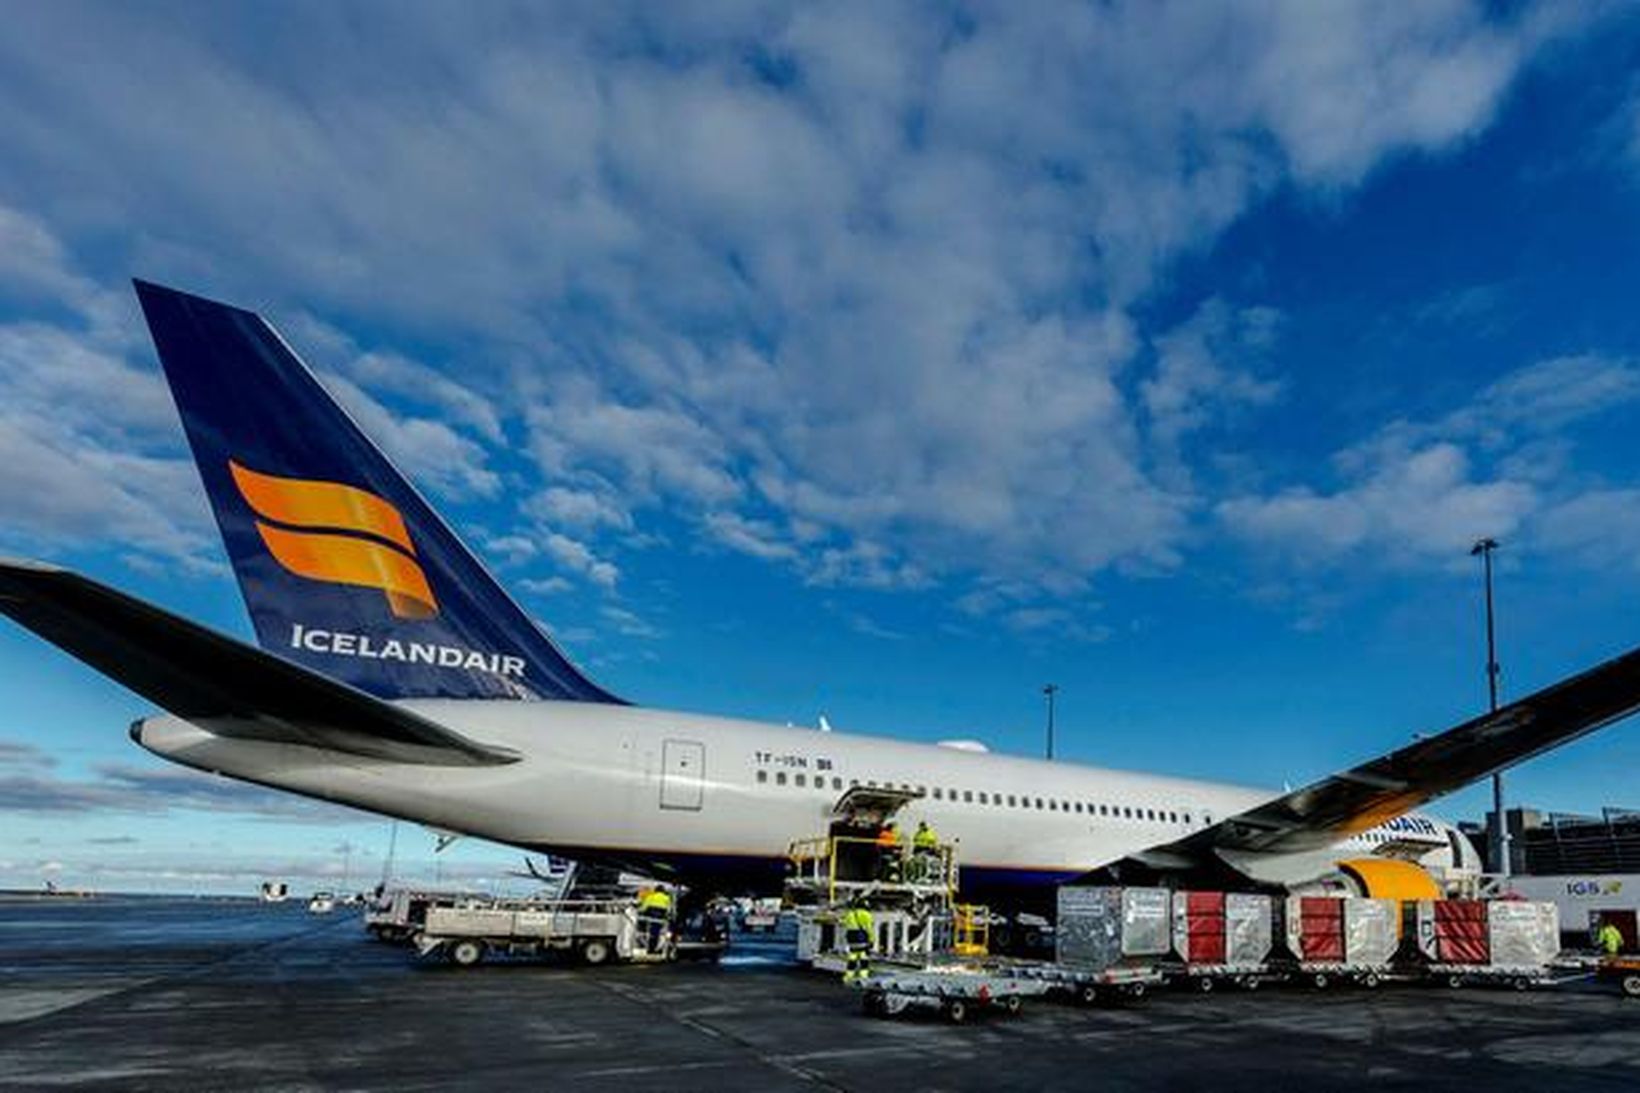 Heildareignir Icelandair Group námu 1,2 milljörðum bandaríkjadala við lok fyrri …